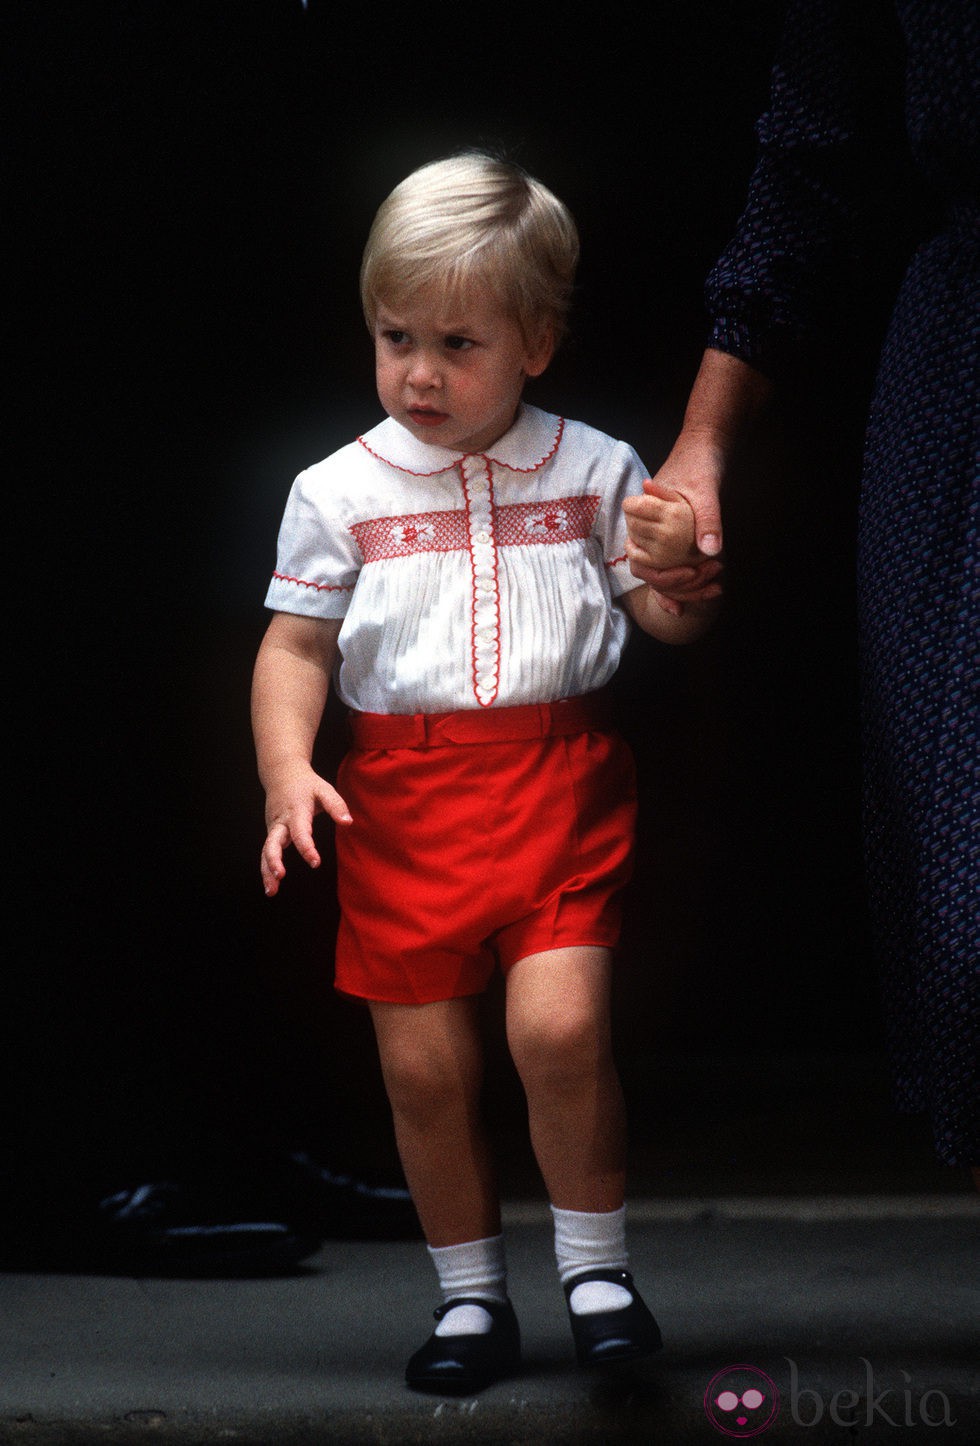 El Príncipe Guillermo tras conocer a su hermano Harry en 1984